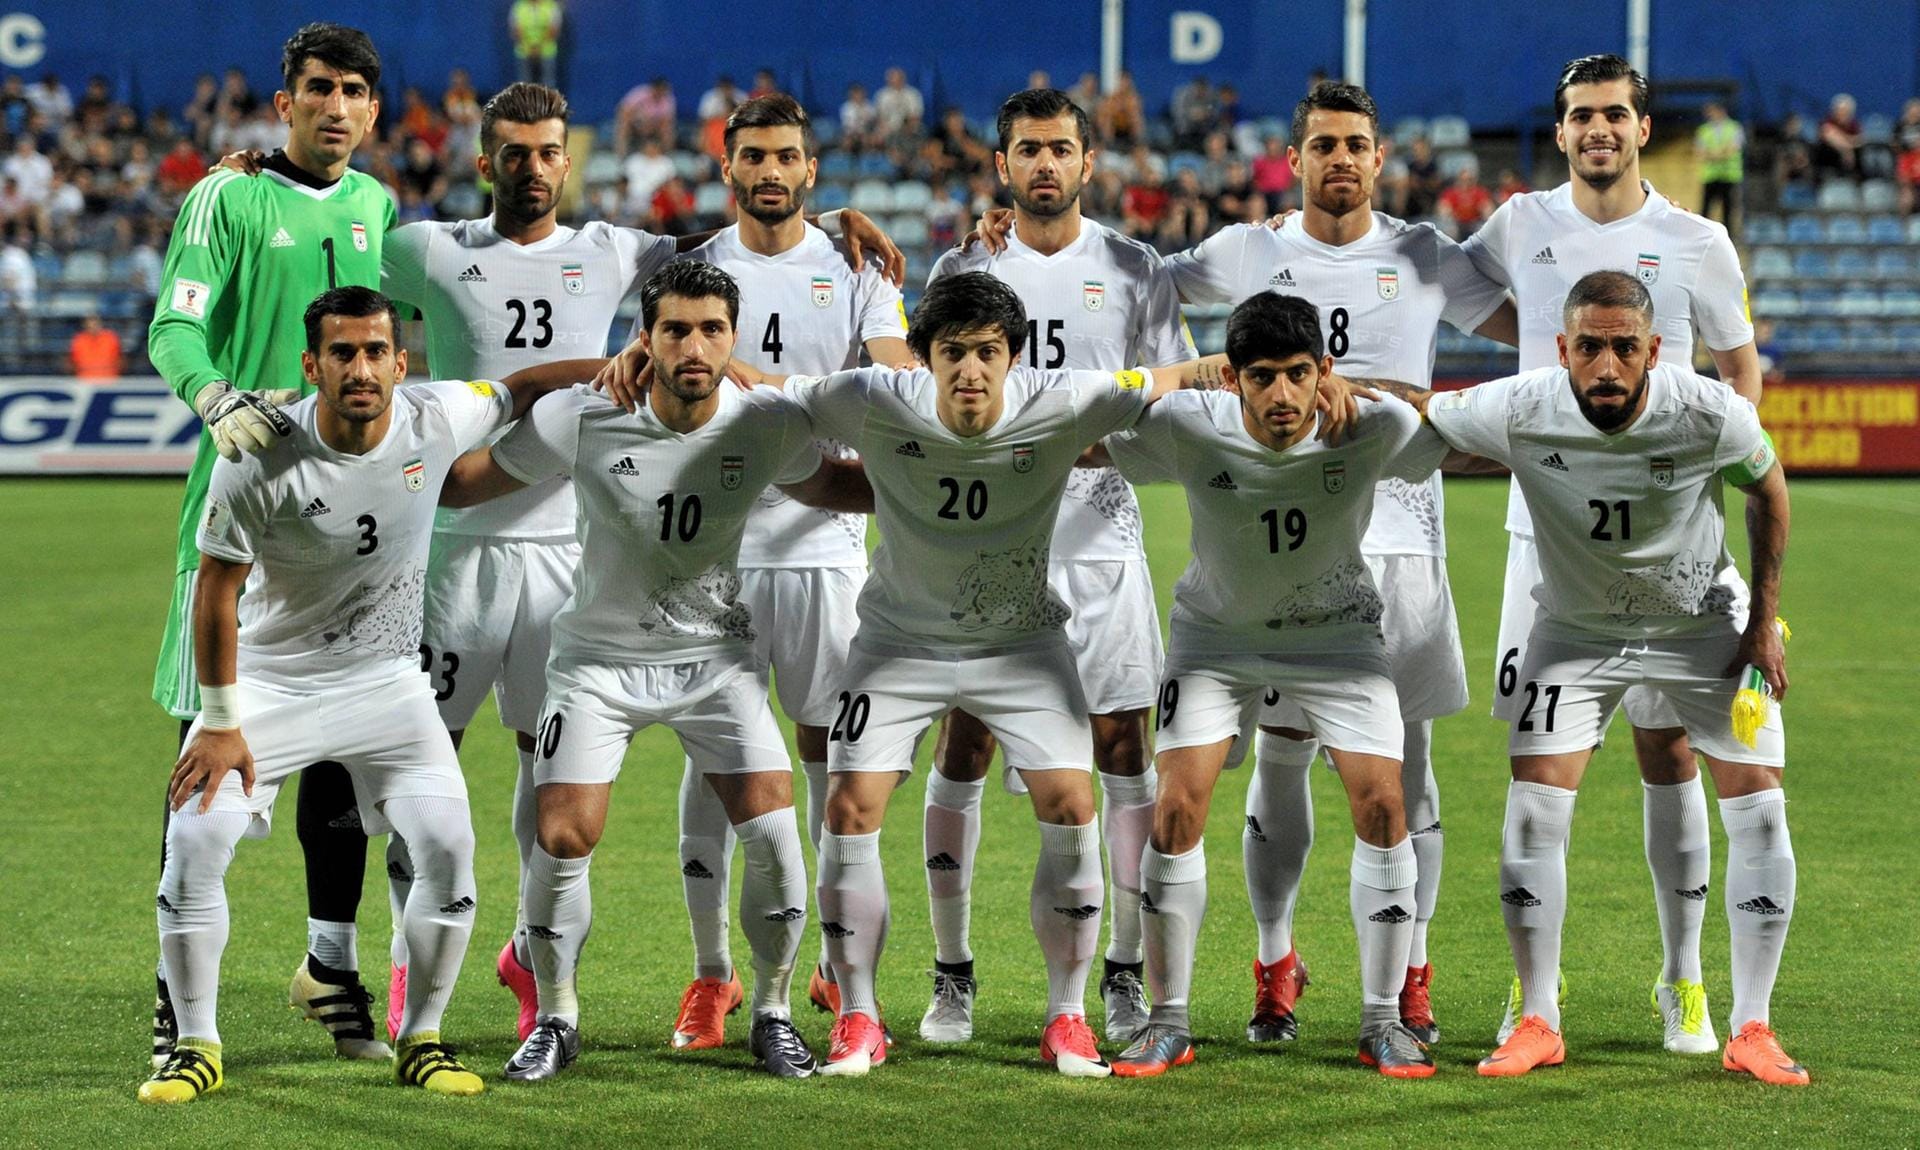 Ganz souverän präsentierte sich auch der Iran in der WM-Qualifikation. Durch ein 2:0 gegen Usbekistan schaffte die Mannschaft um den Ex-Herthaner Ashkan Dejagah (u. r.) bereits Mitte Juni als drittes Team die Qualifikation für Russland 2018.